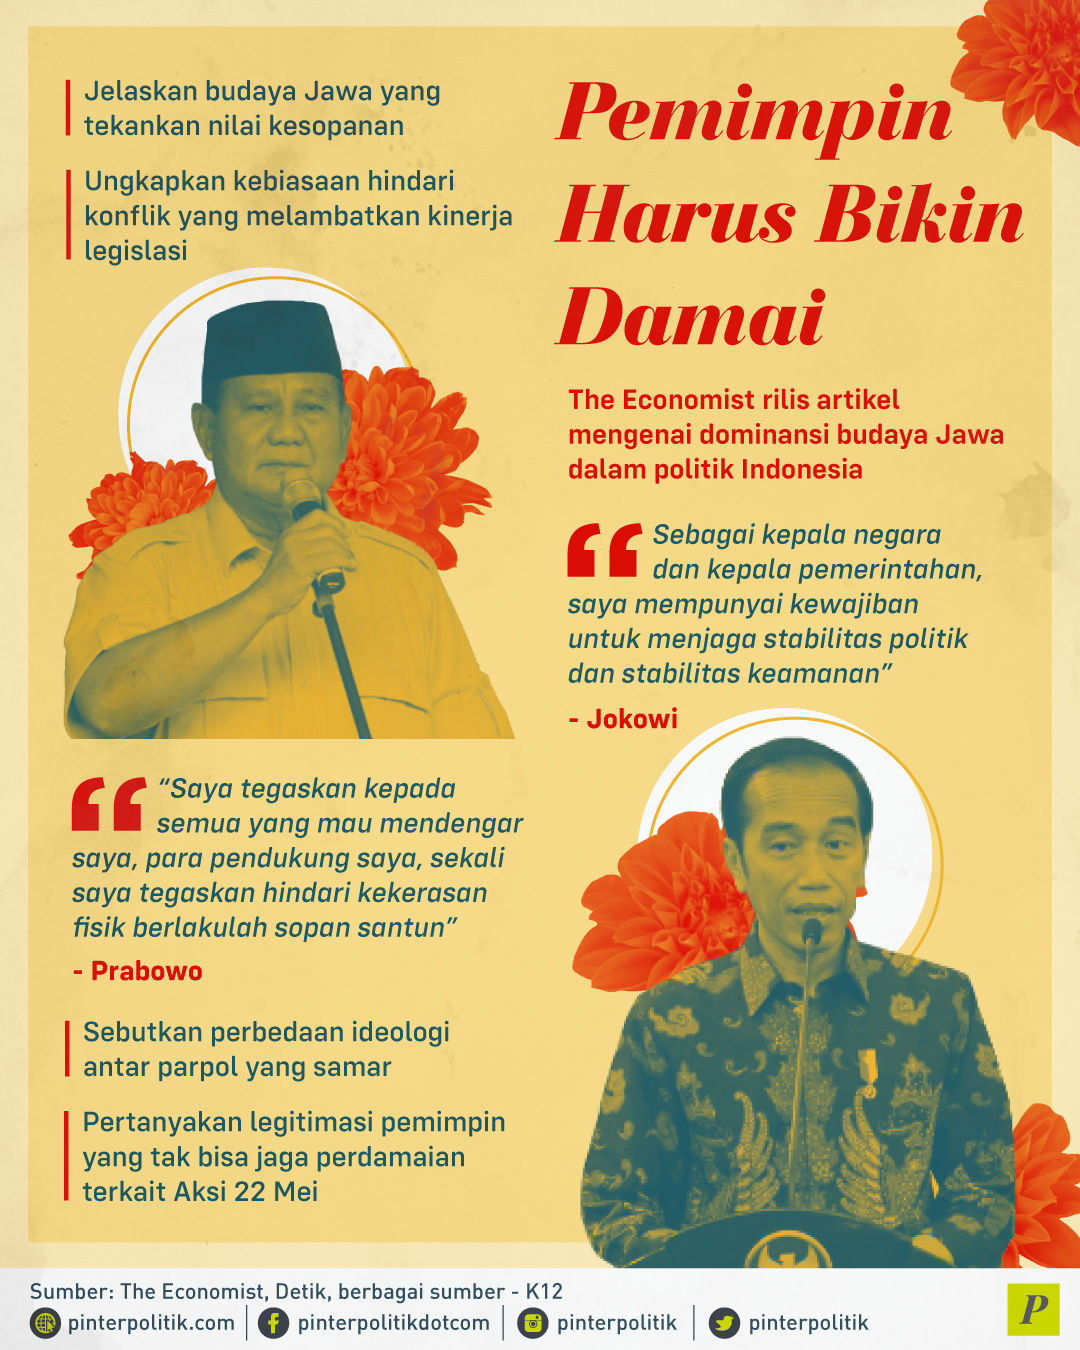 The economist rillis dominasi budaya Jawa dalam politik Indonesia